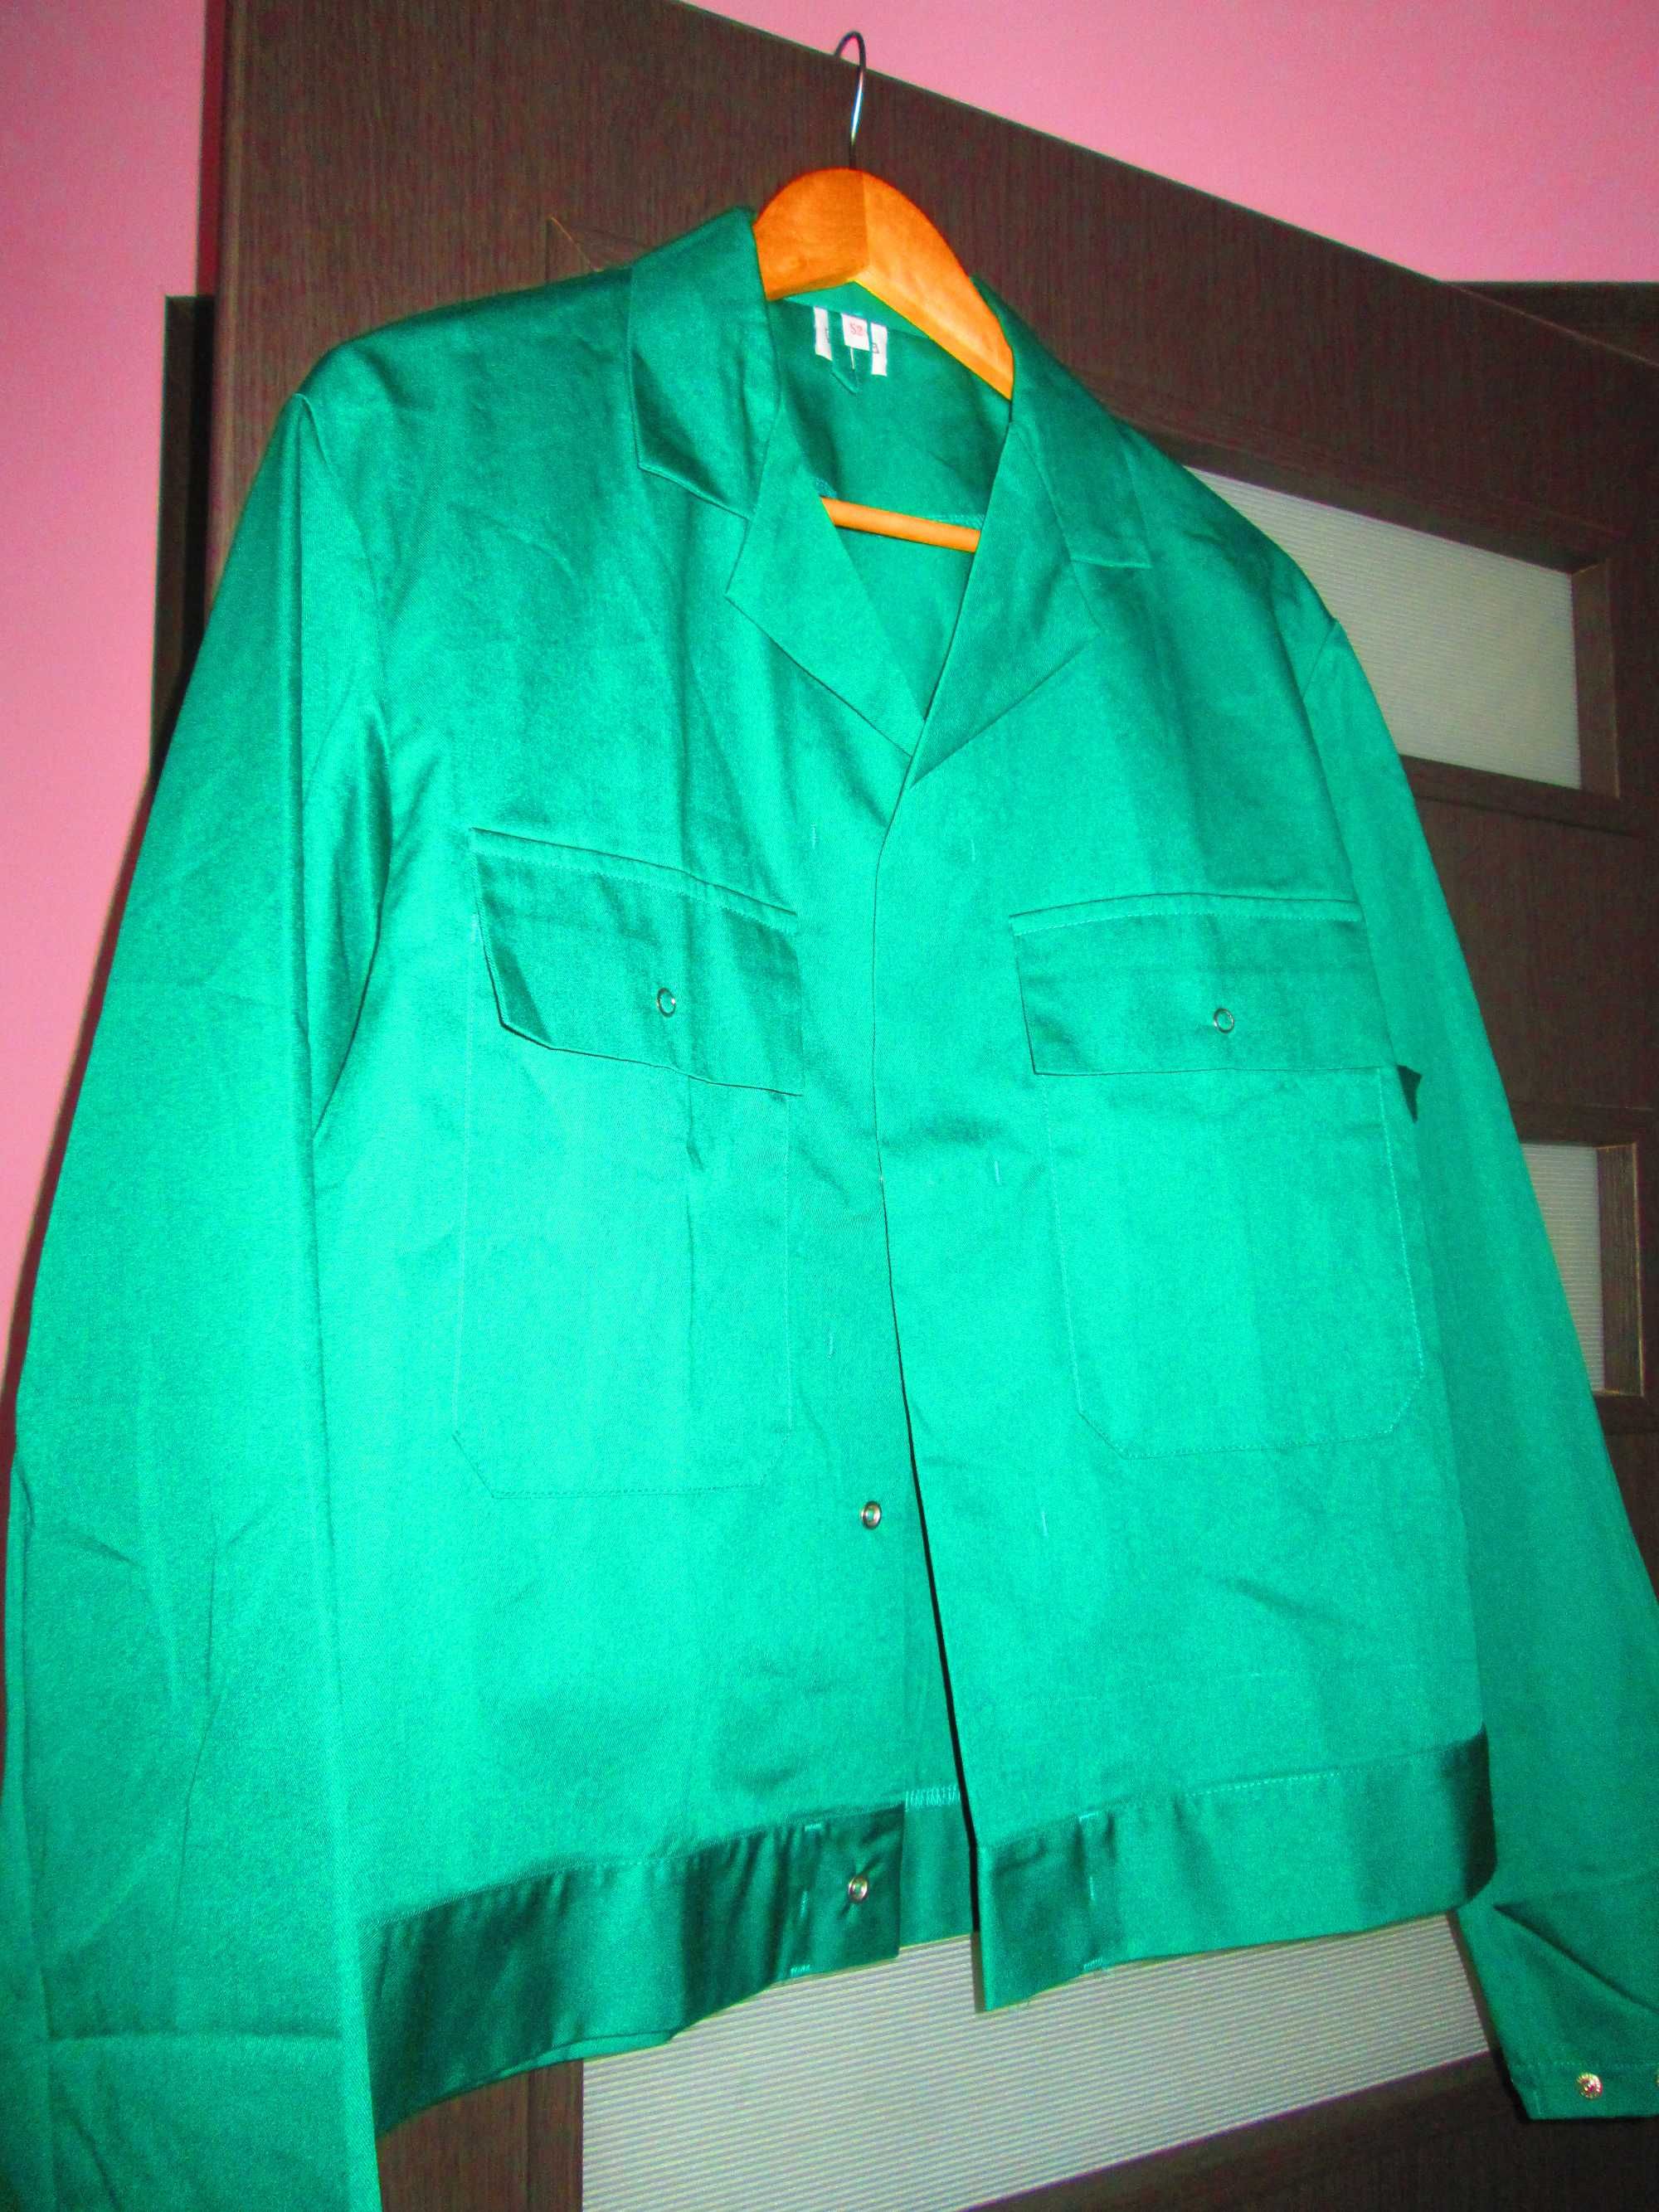 haina noua lucru verde inchis 52